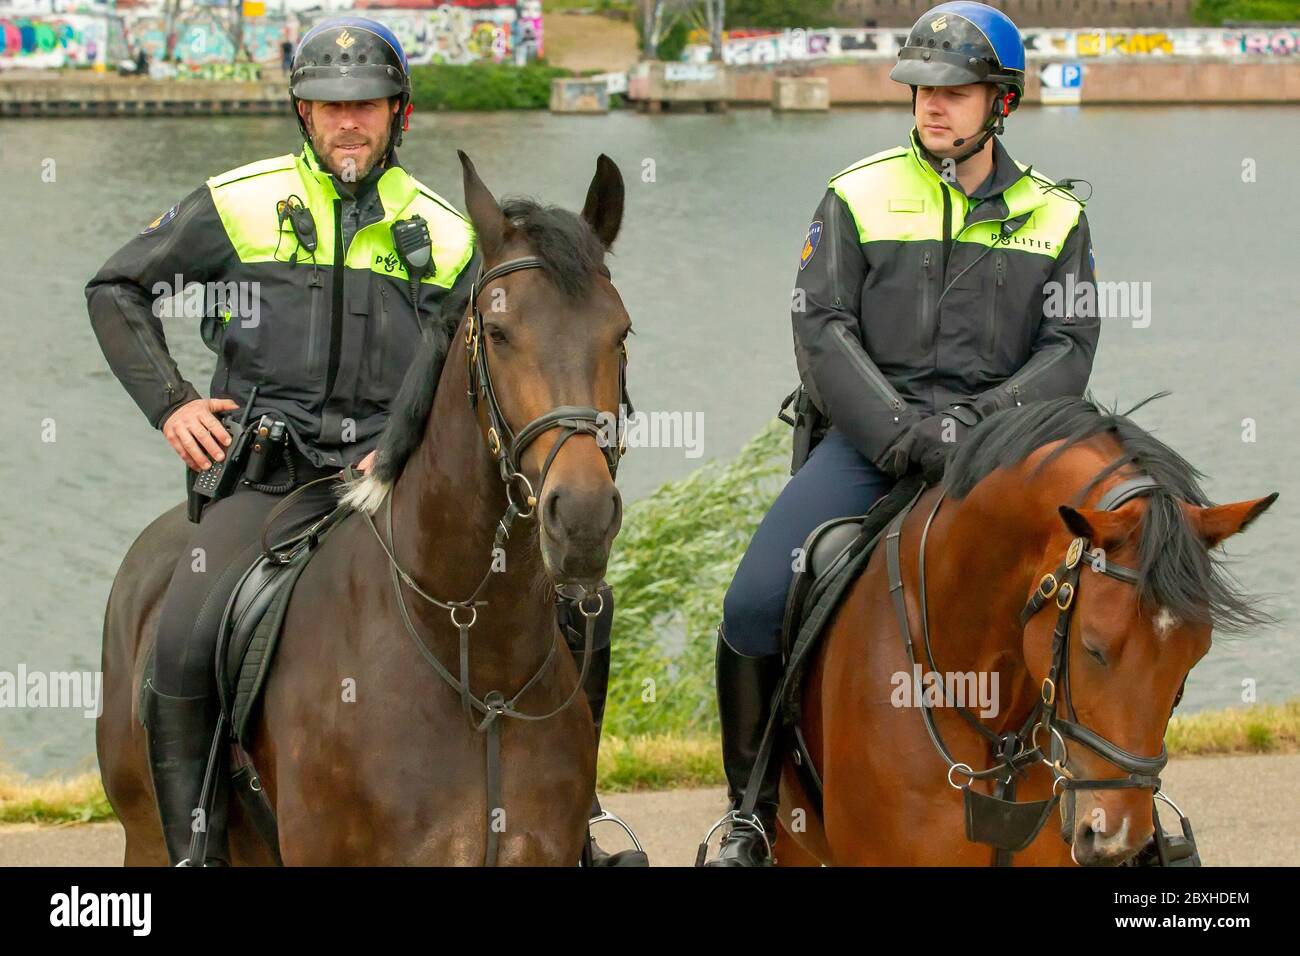 7 giugno 2020 Maastricht, Paesi Bassi 2 poliziotti sui cavalli che guardano una protesta contro il razzismo il 7 giugno 2020 a Maastricht, Paesi Bassi Foto Stock